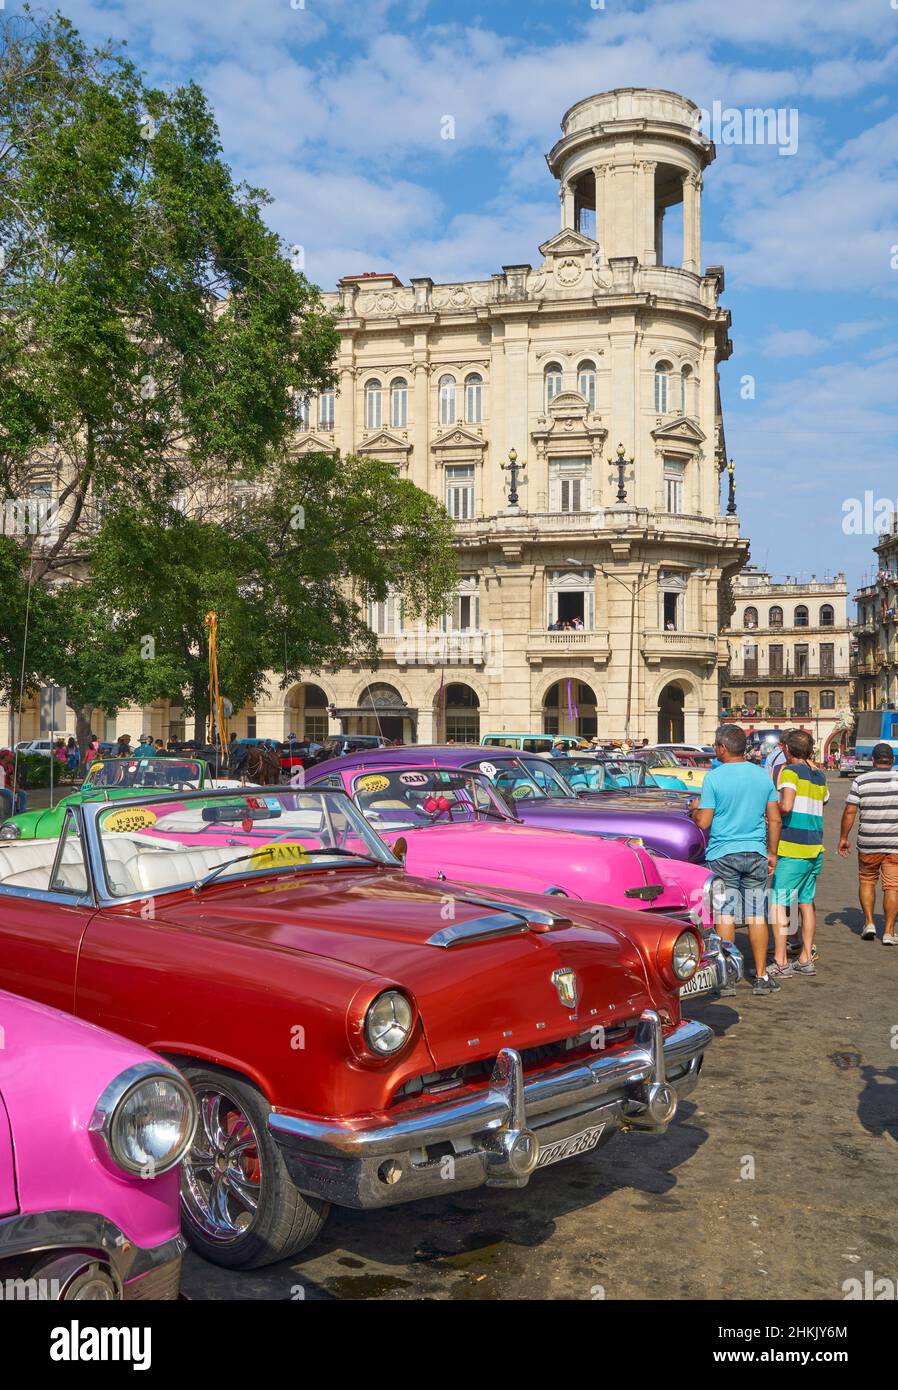 Square Parque Central with antique cars for tourists, Cuba, La Habana, Villa de San Cristabal de la Habana Stock Photo